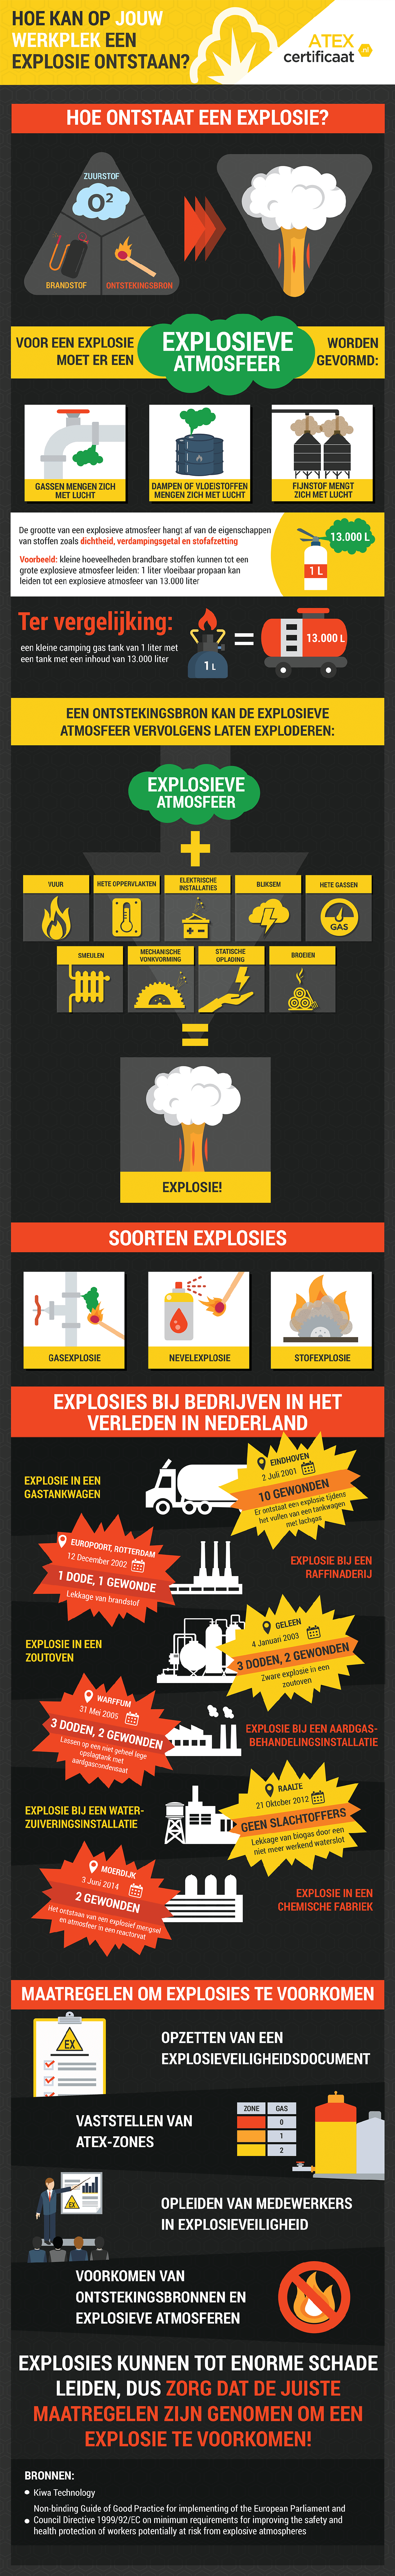 Hoe kan op jouw werkplek een explosie ontstaan?